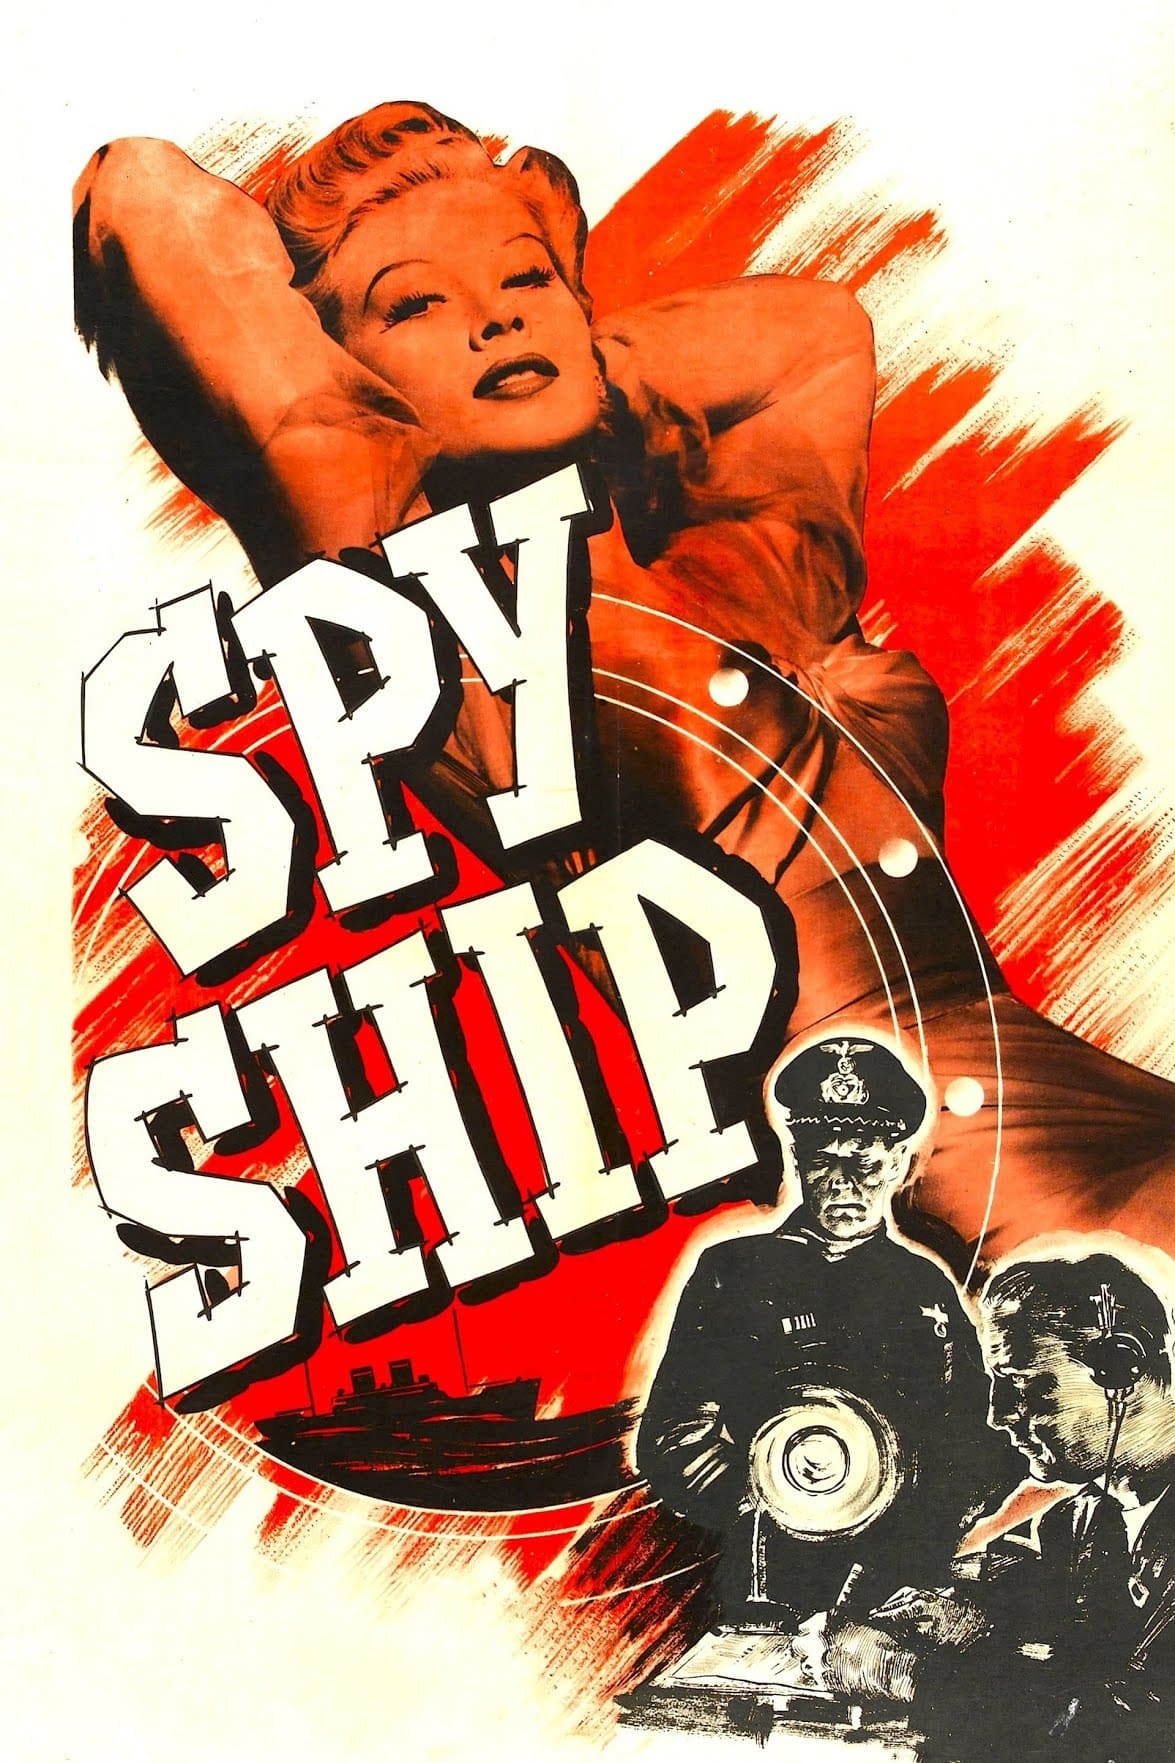 Spy Ship (1942)